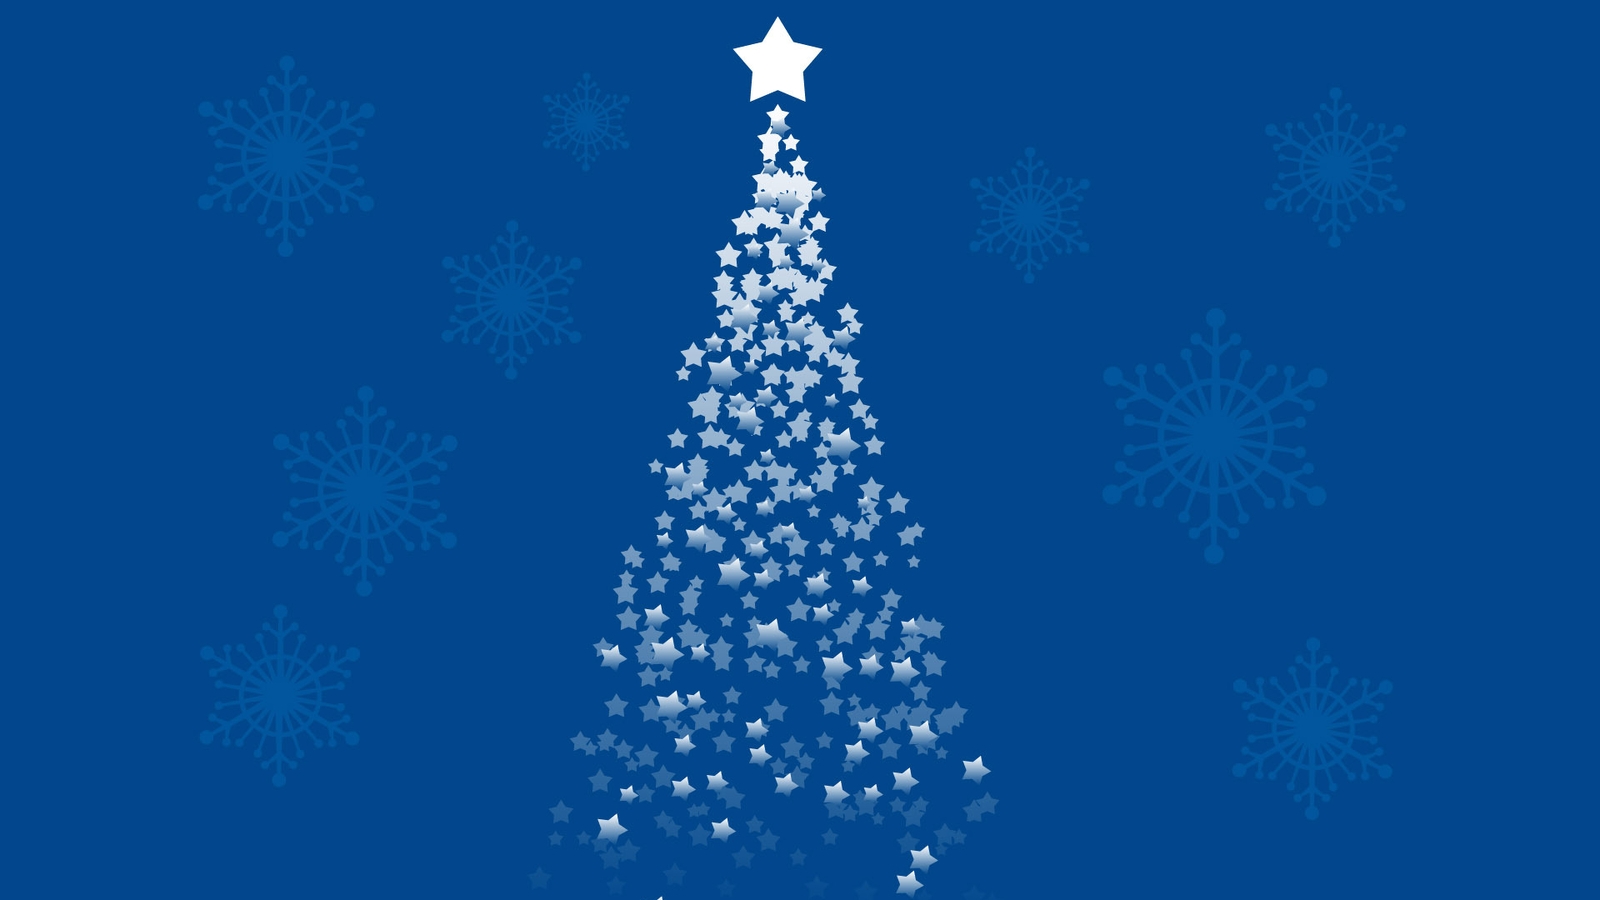 Картинка: Новый год, ёлочка, звёздочки, снежинки, голубой фон